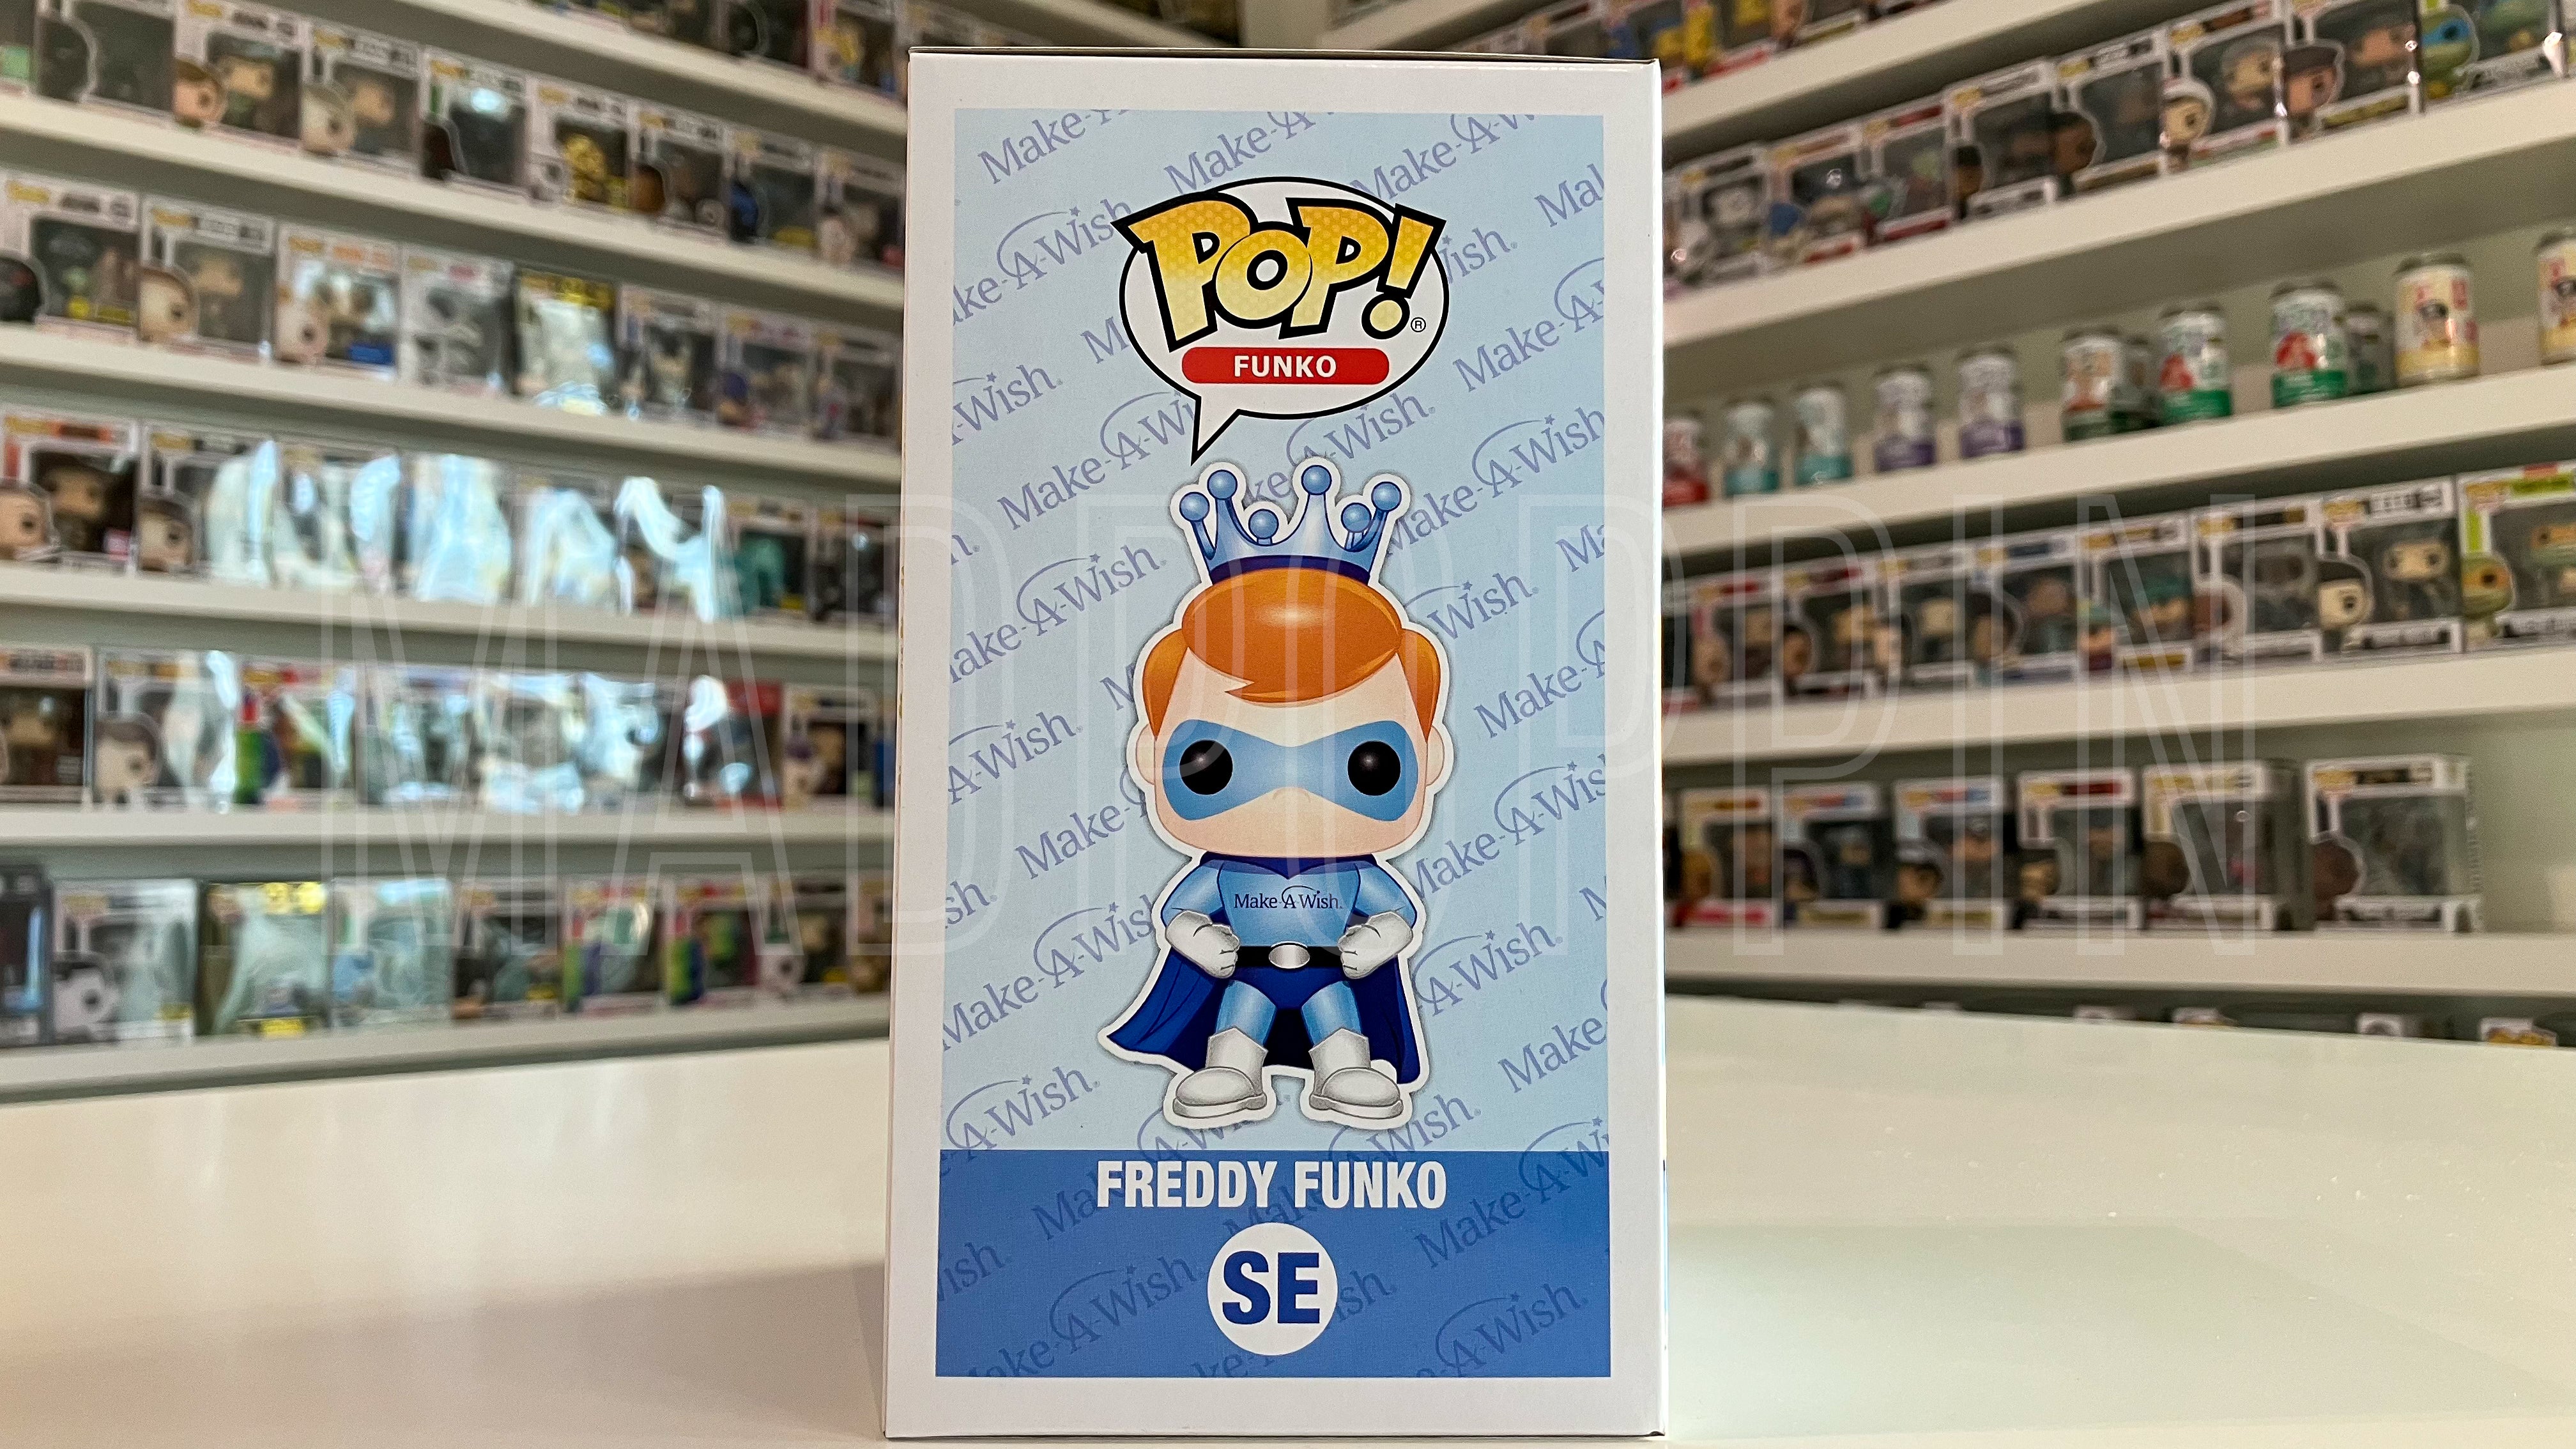 Funko POP! Make A Wish Freddy Funko 5000 PCS Limited Edition SE